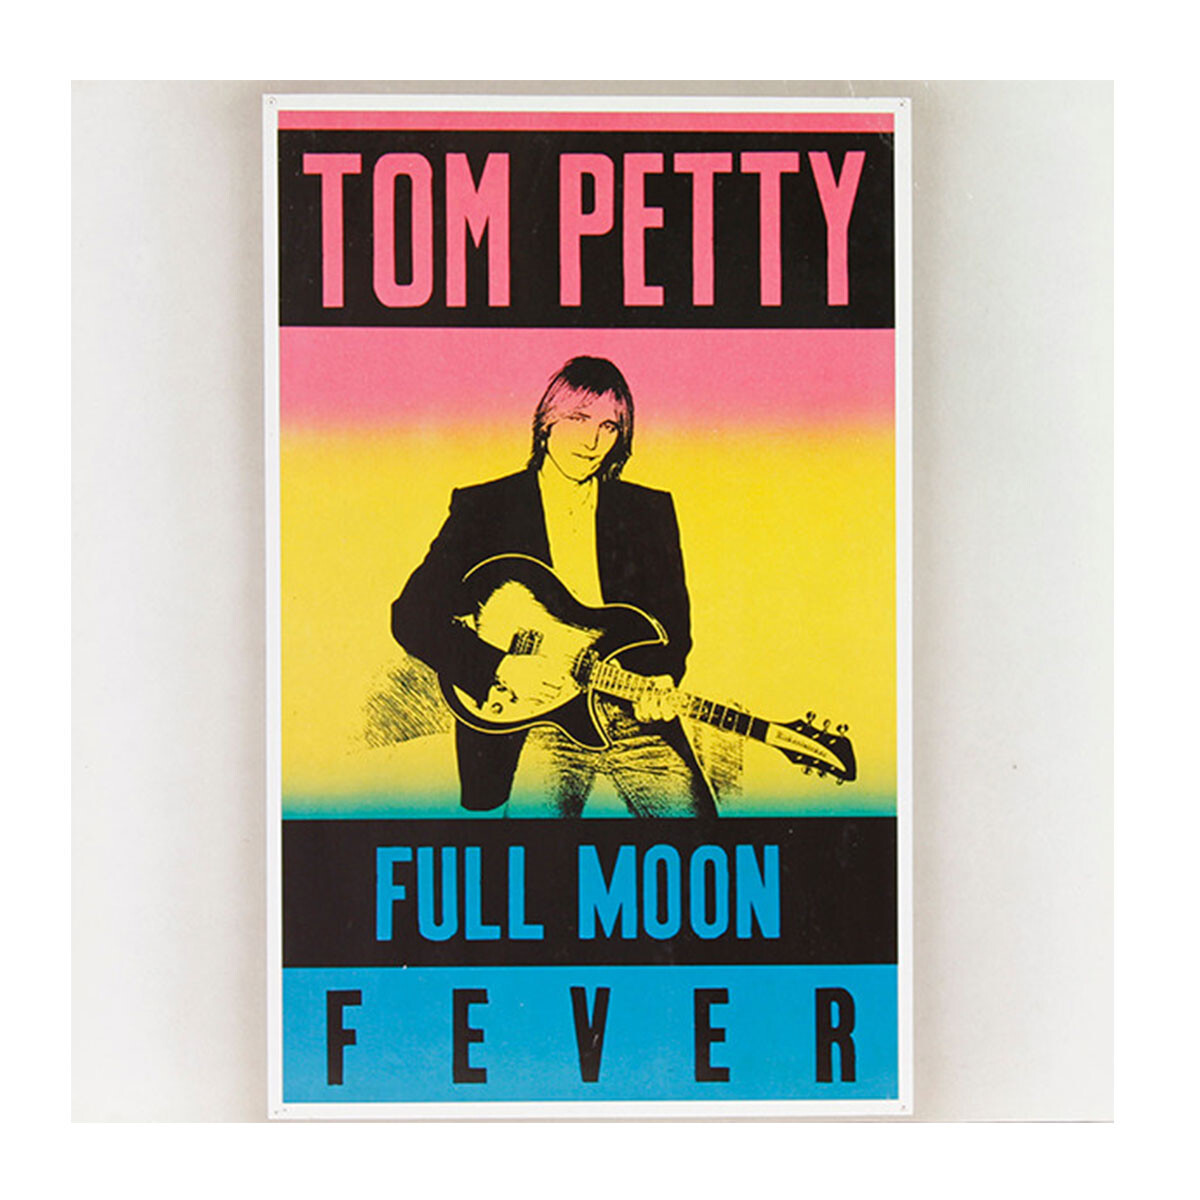 Tom Petty - Full Moon Fever Esp Vinilo 